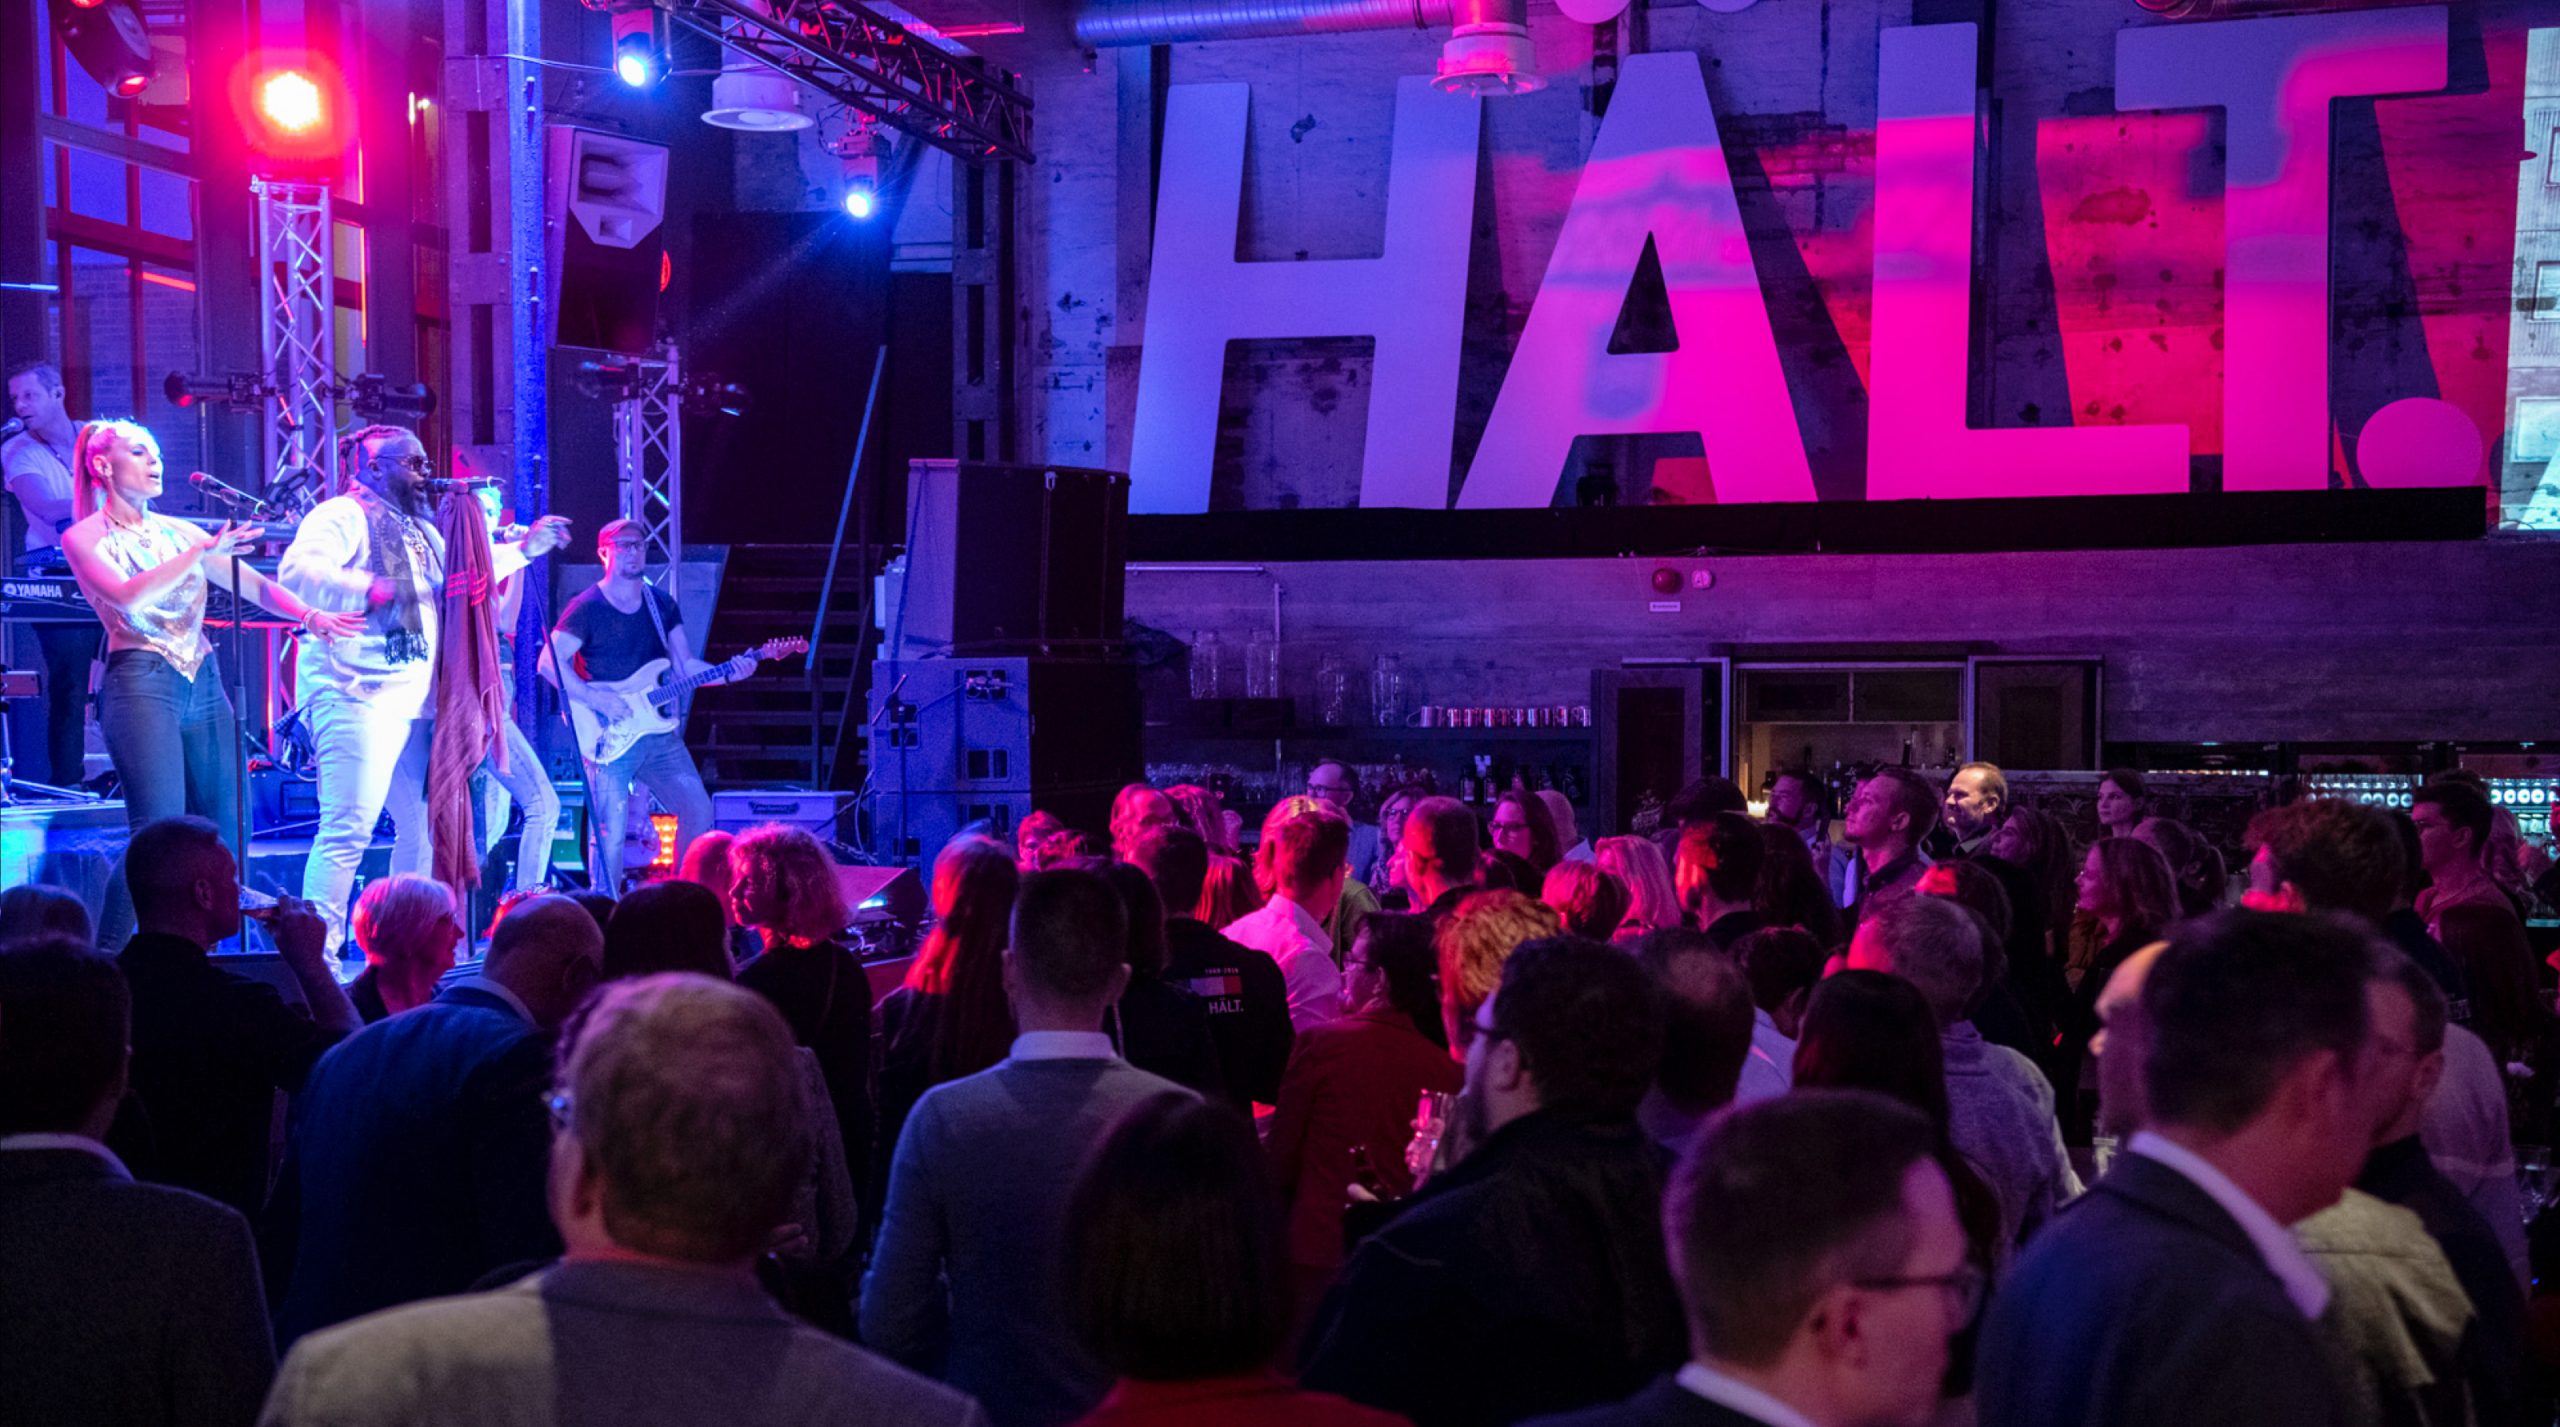 Feiernde Menschen in einer Industrie-Halle, auf der Bühne spielt eine Band für die Hakro Jubiläumsfeier